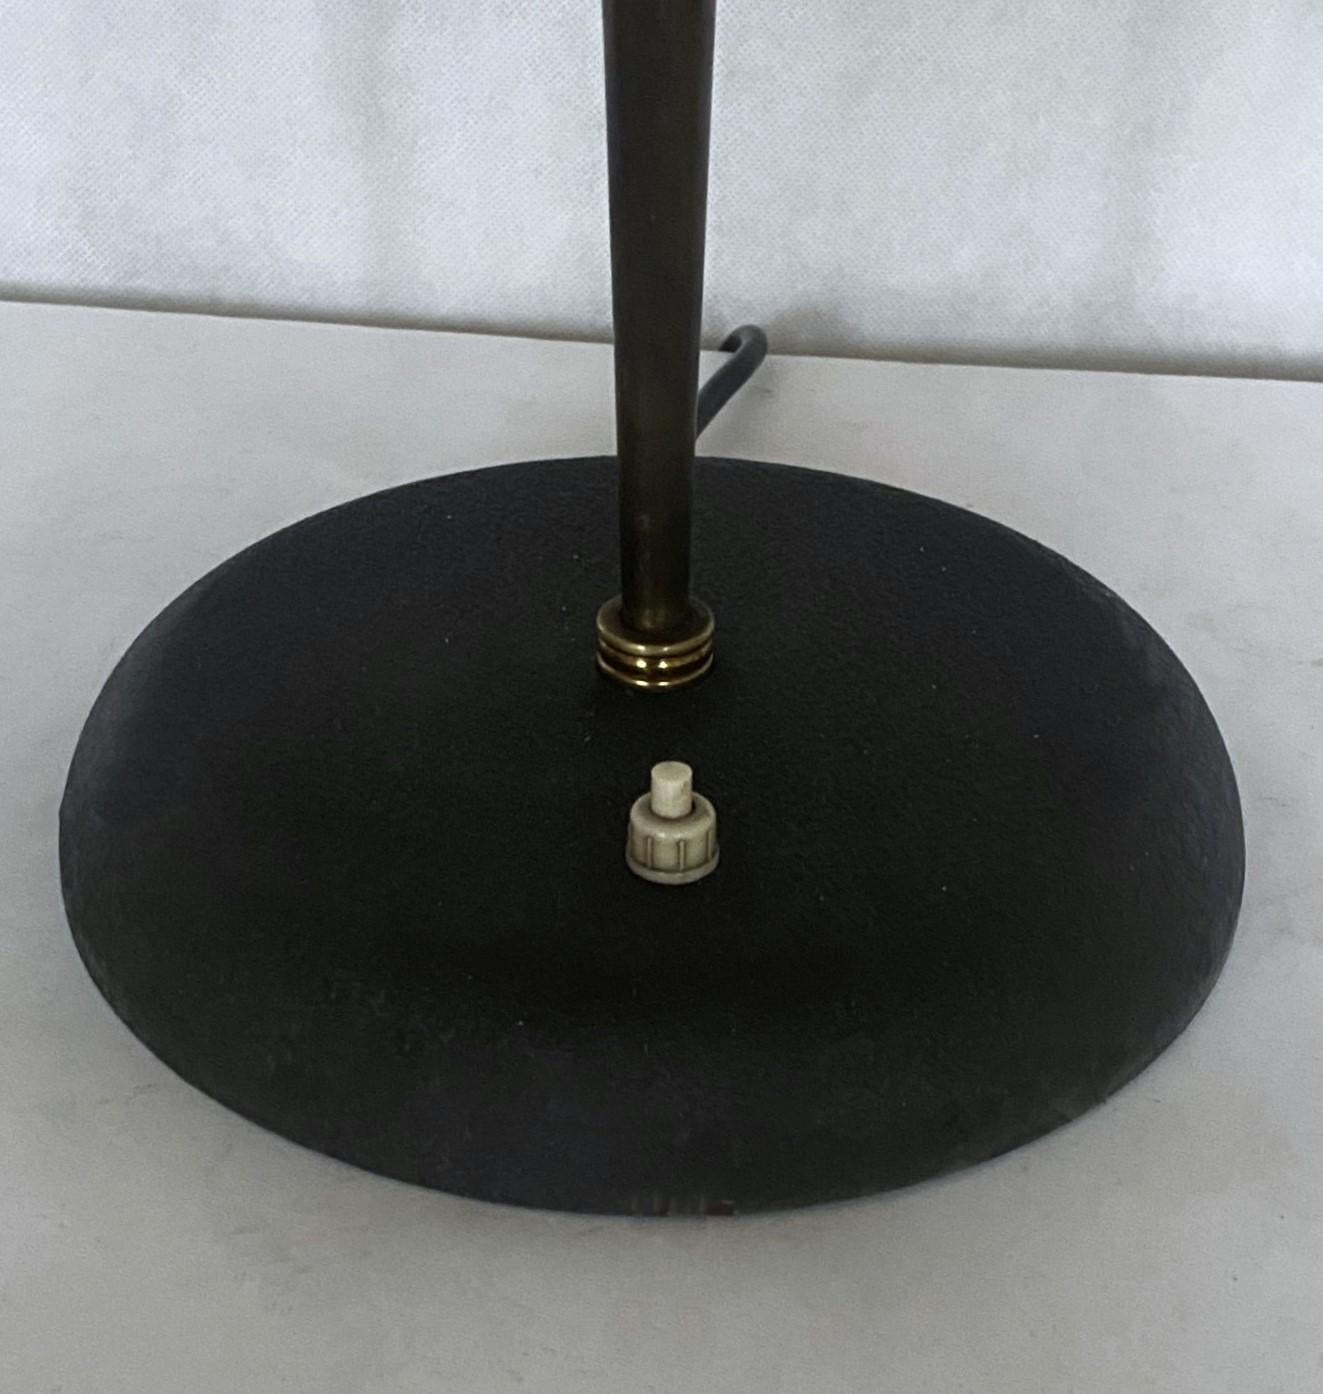 Midcentury Stilnovo Desk or Table Lamp Brass Black Enameled Metal, Iataly, 1950s For Sale 6